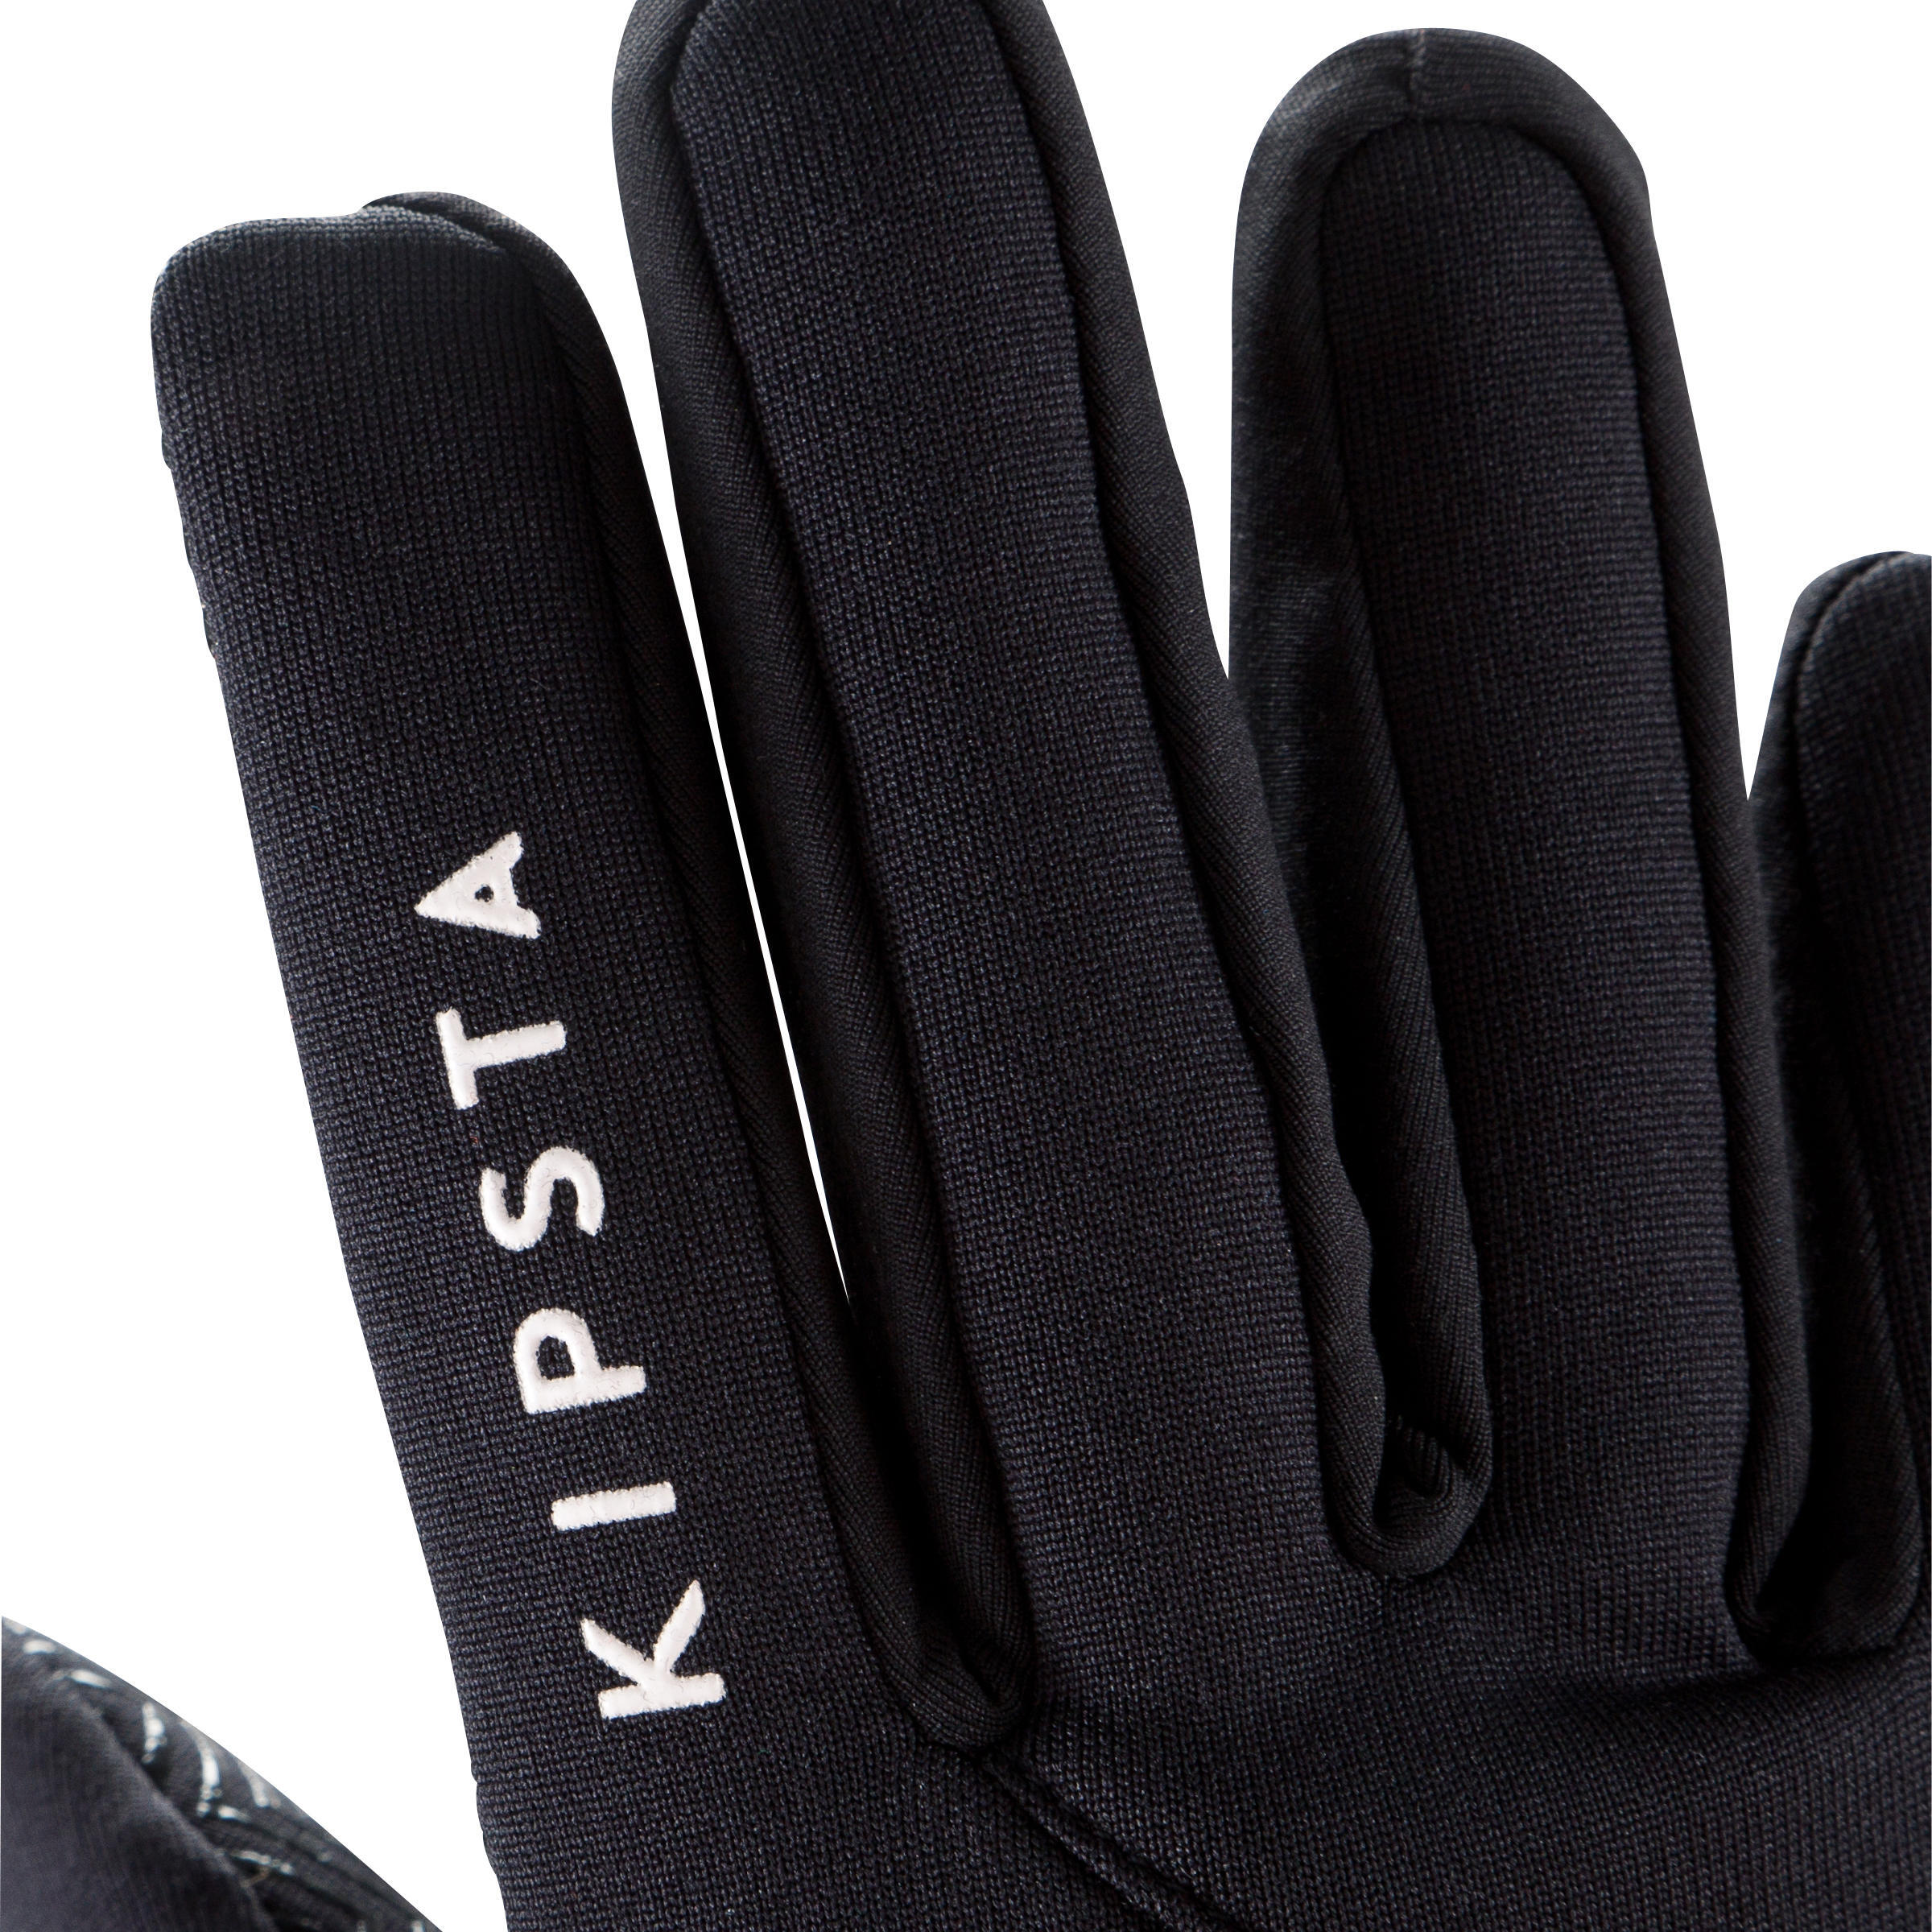 Kids' Football Gloves Keepdry 500 - Black 5/6